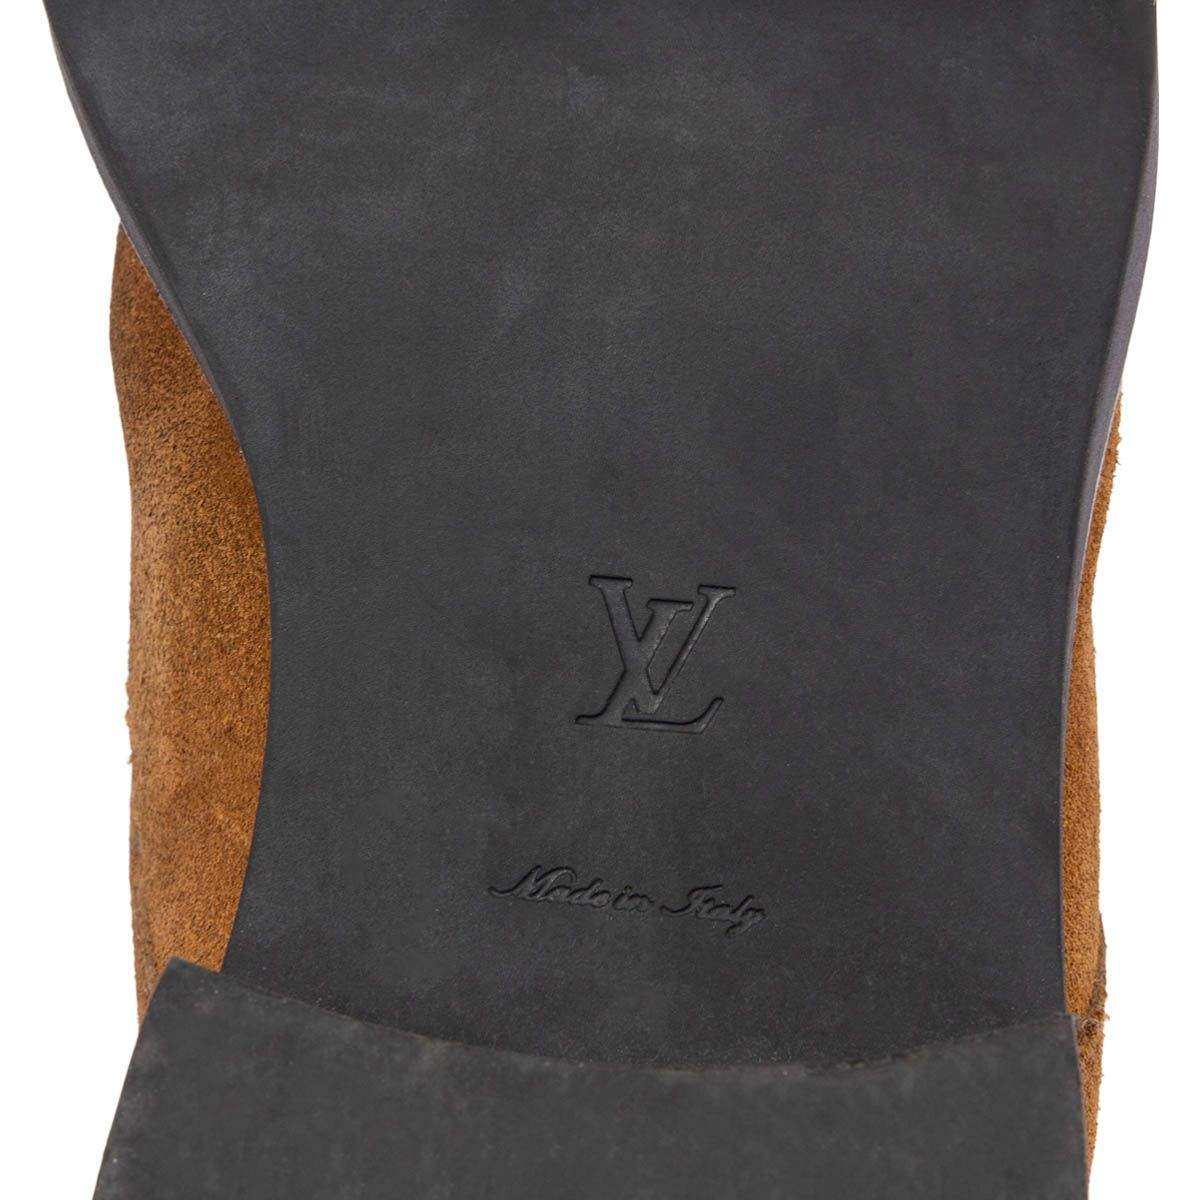 Louis Vuitton 2020 Wonderland Flat Ranger Combat Boots - Brown Boots, Shoes  - LOU764252